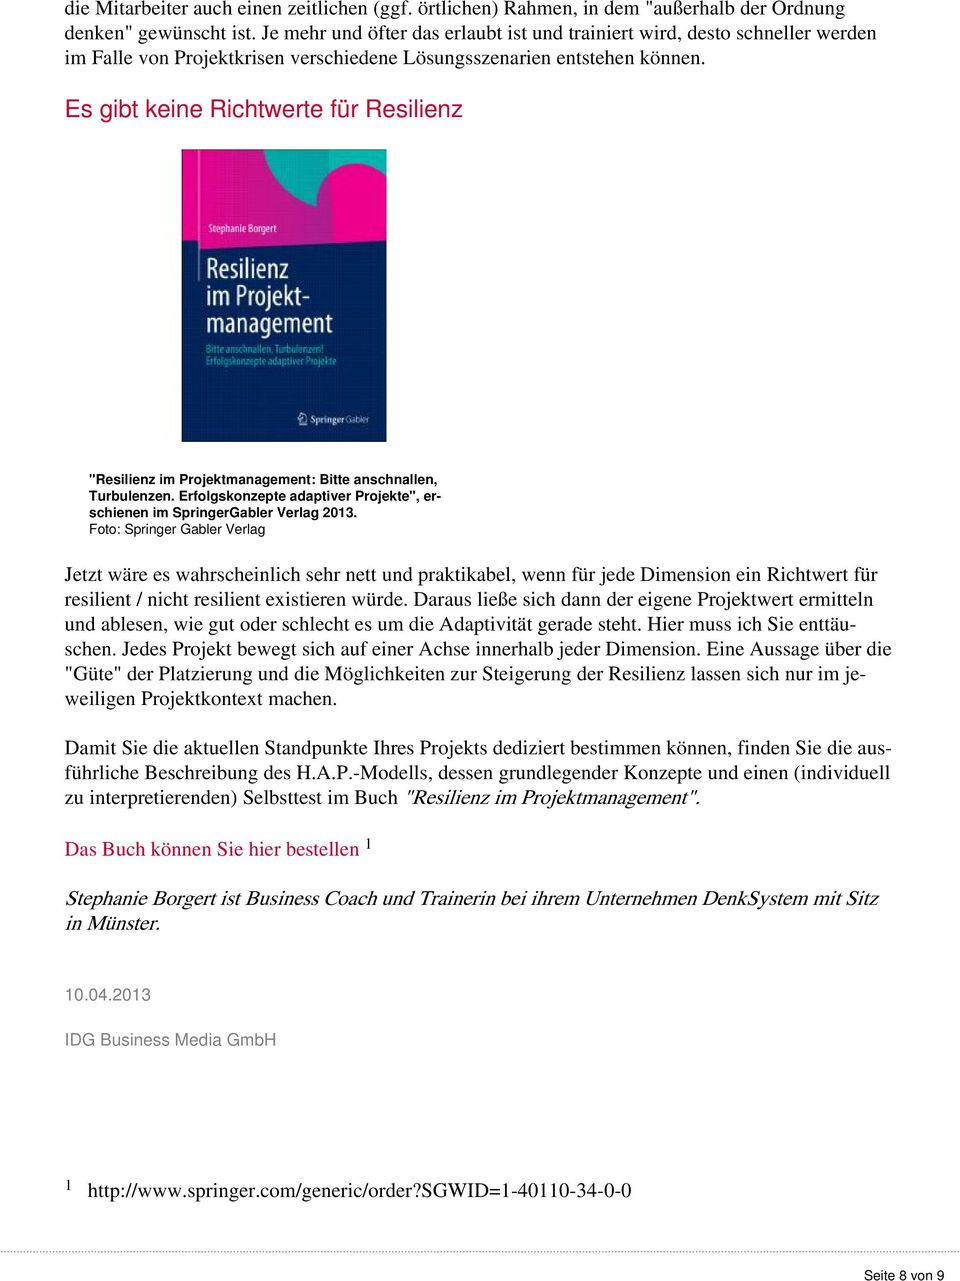 Es gibt keine Richtwerte für Resilienz "Resilienz im Projektmanagement: Bitte anschnallen, Turbulenzen. Erfolgskonzepte adaptiver Projekte", erschienen im SpringerGabler Verlag 2013.